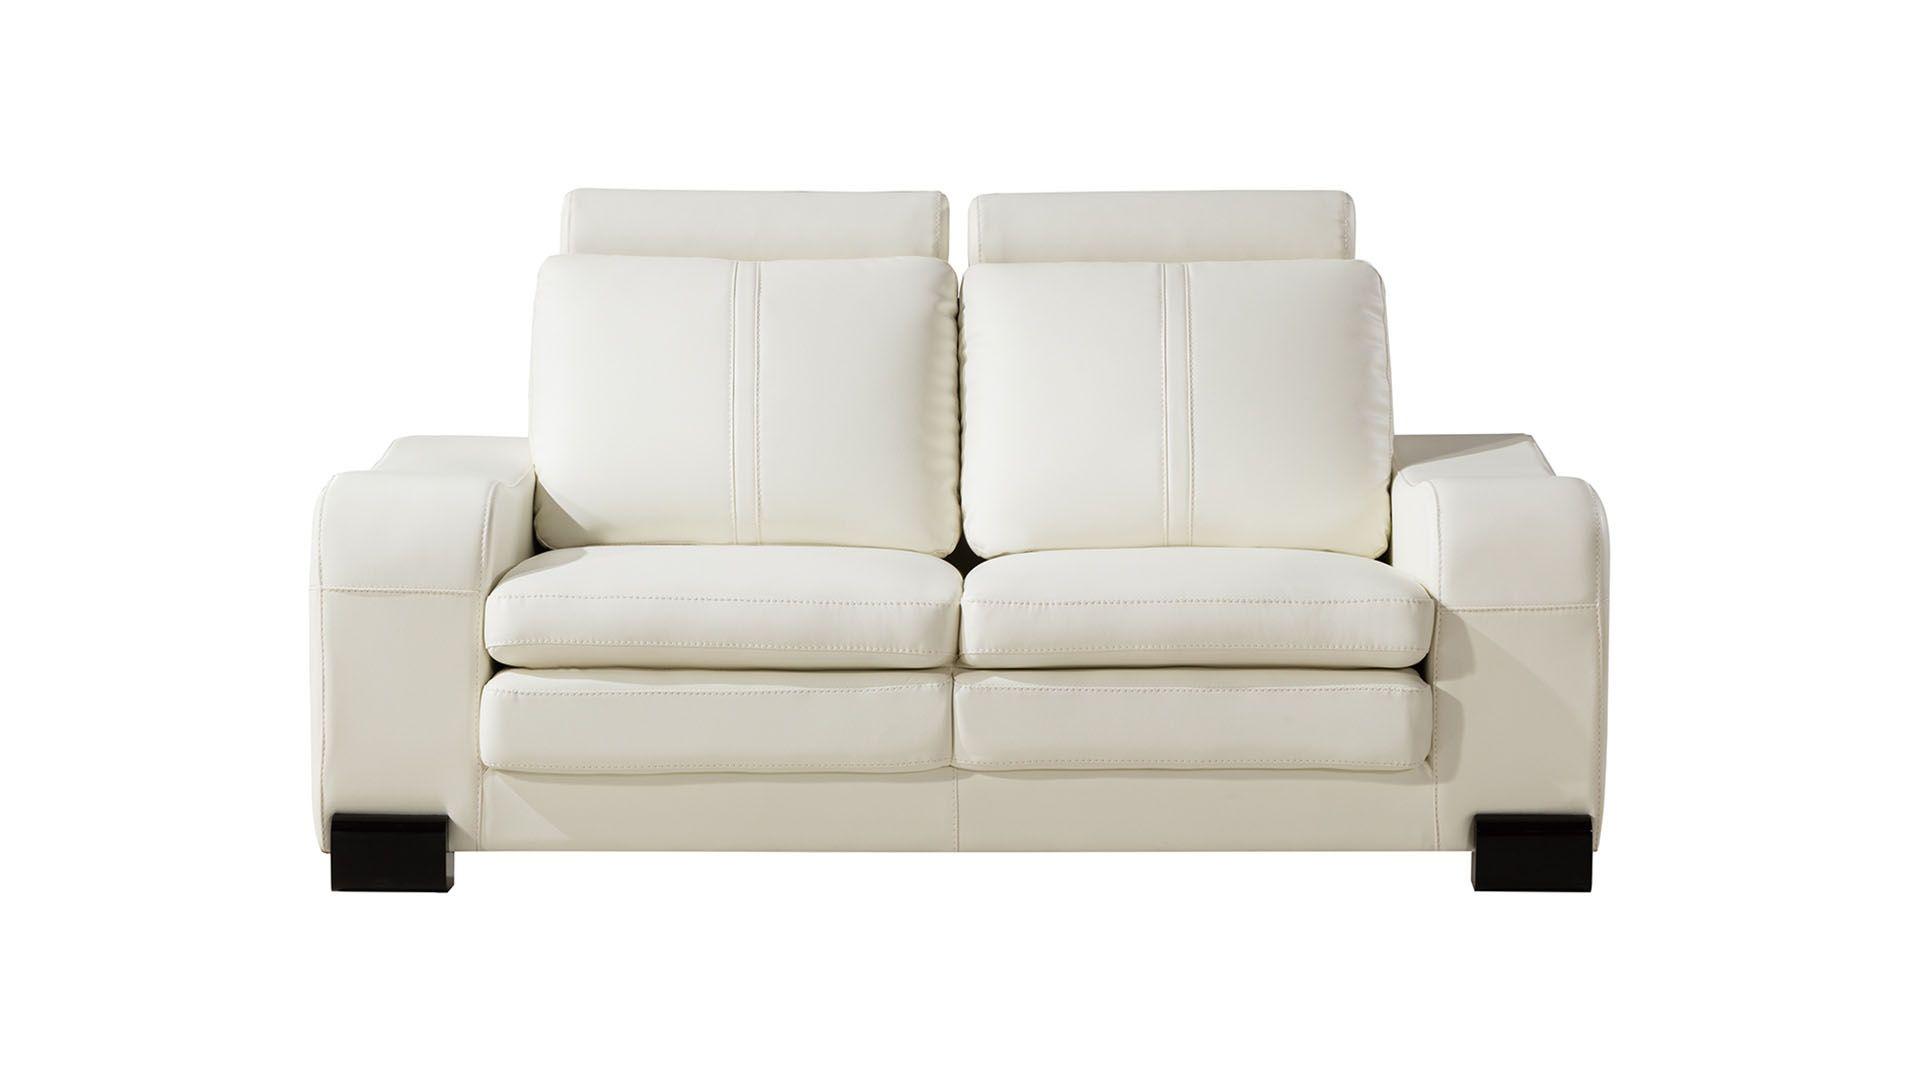 

                    
American Eagle Furniture AE210-IV Sofa Set Ivory Faux Leather Purchase 
